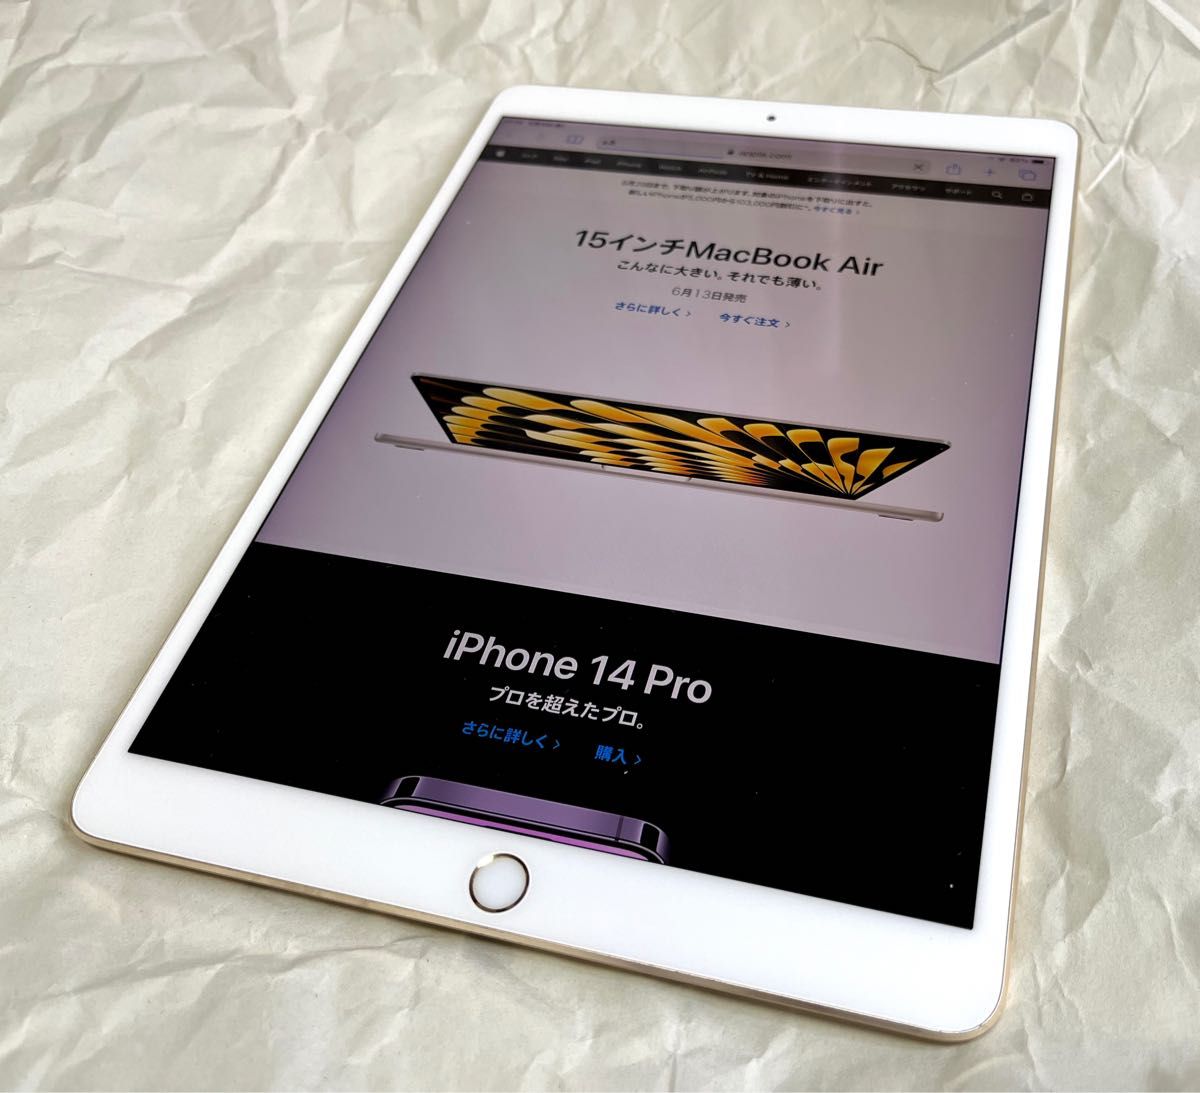 良品 iPad Pro 10 5インチ 64GB Wi-Fi ゴールド MQDX2J/A 本体のみ